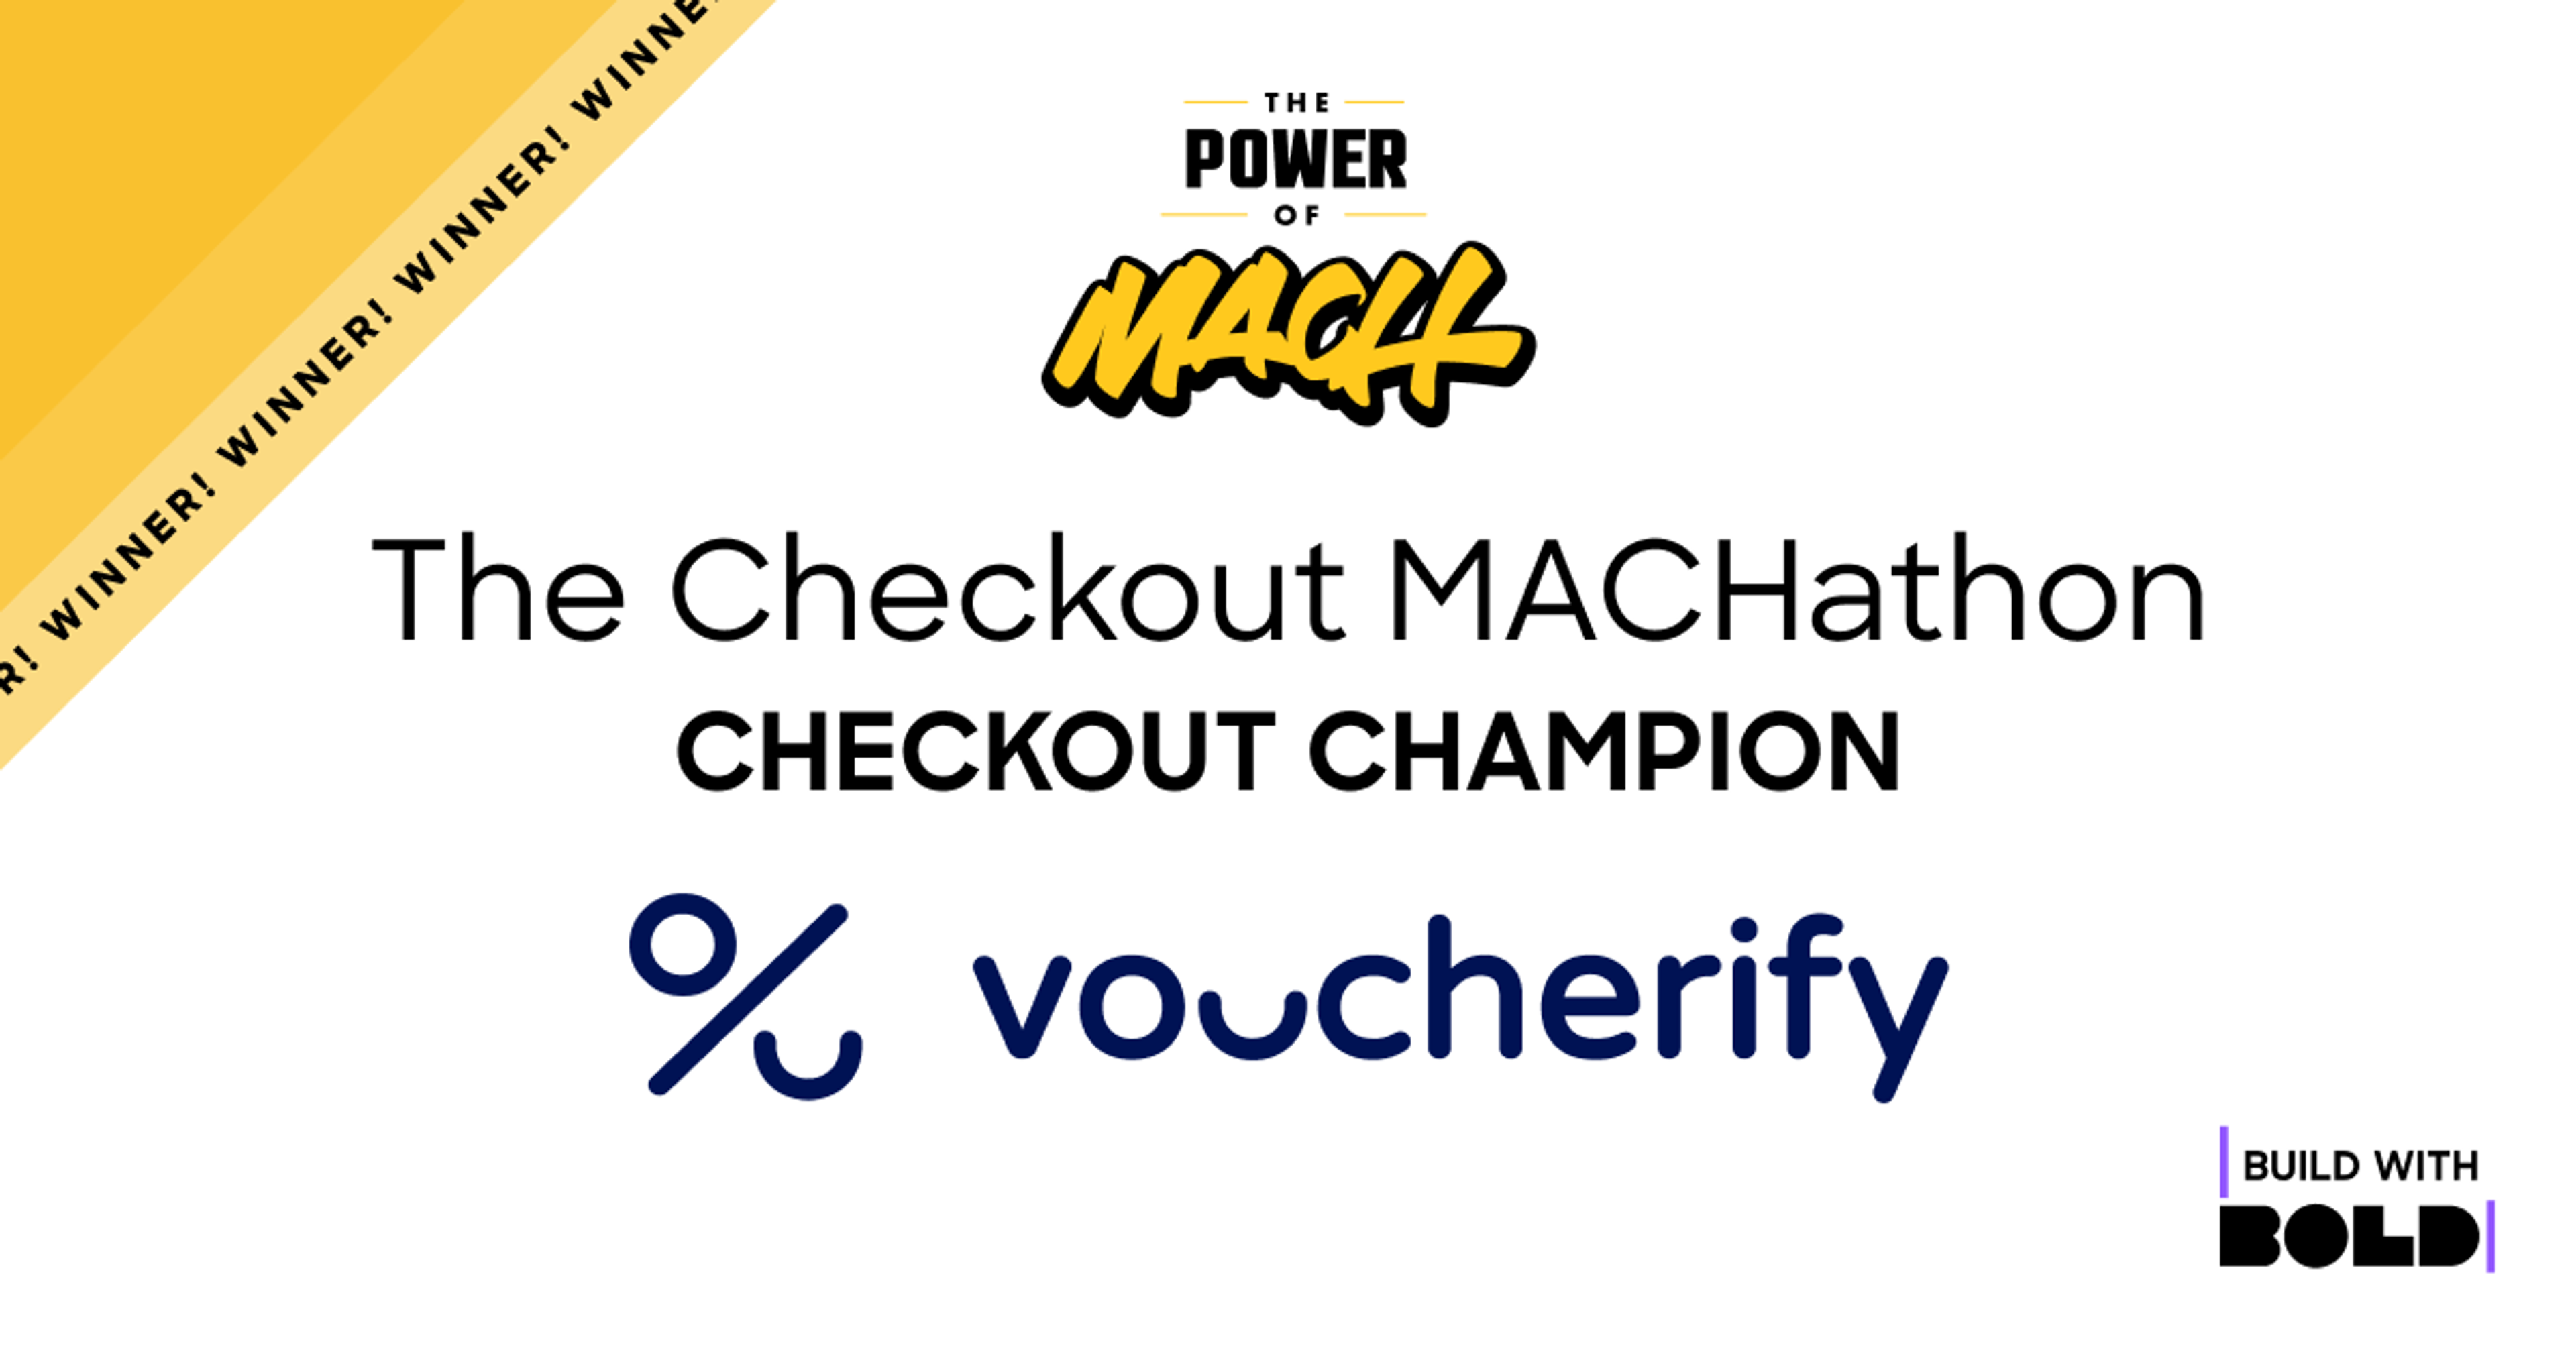 The Checkout Machathon Checkout Champion Voucherify 